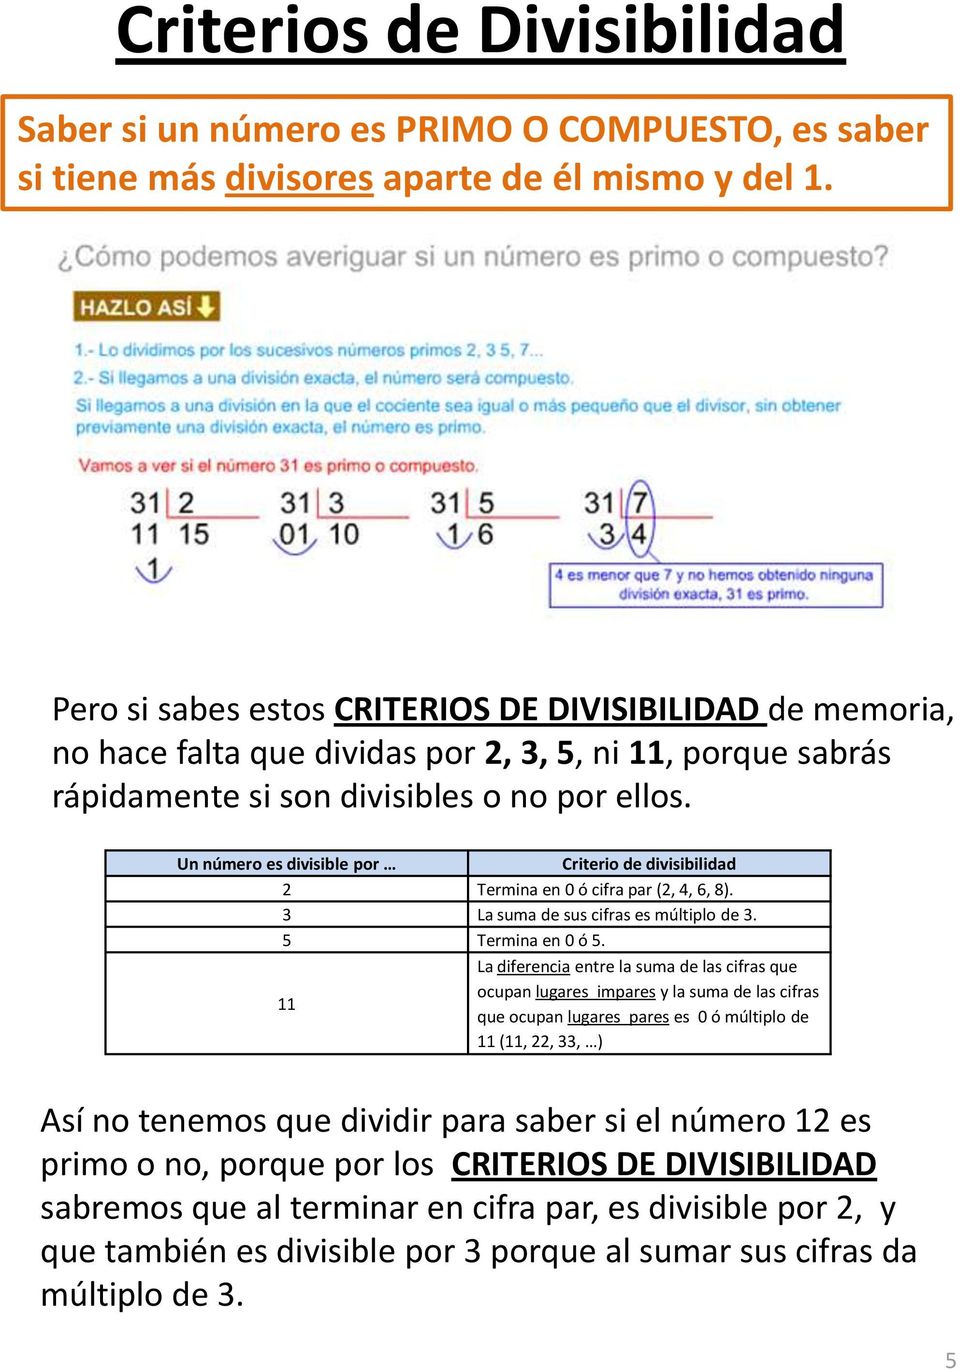 Un número es divisible por Criterio de divisibilidad 2 Termina en 0 ó cifra par (2, 4, 6, 8). 3 La suma de sus cifras es múltiplo de 3. 5 Termina en 0 ó 5.